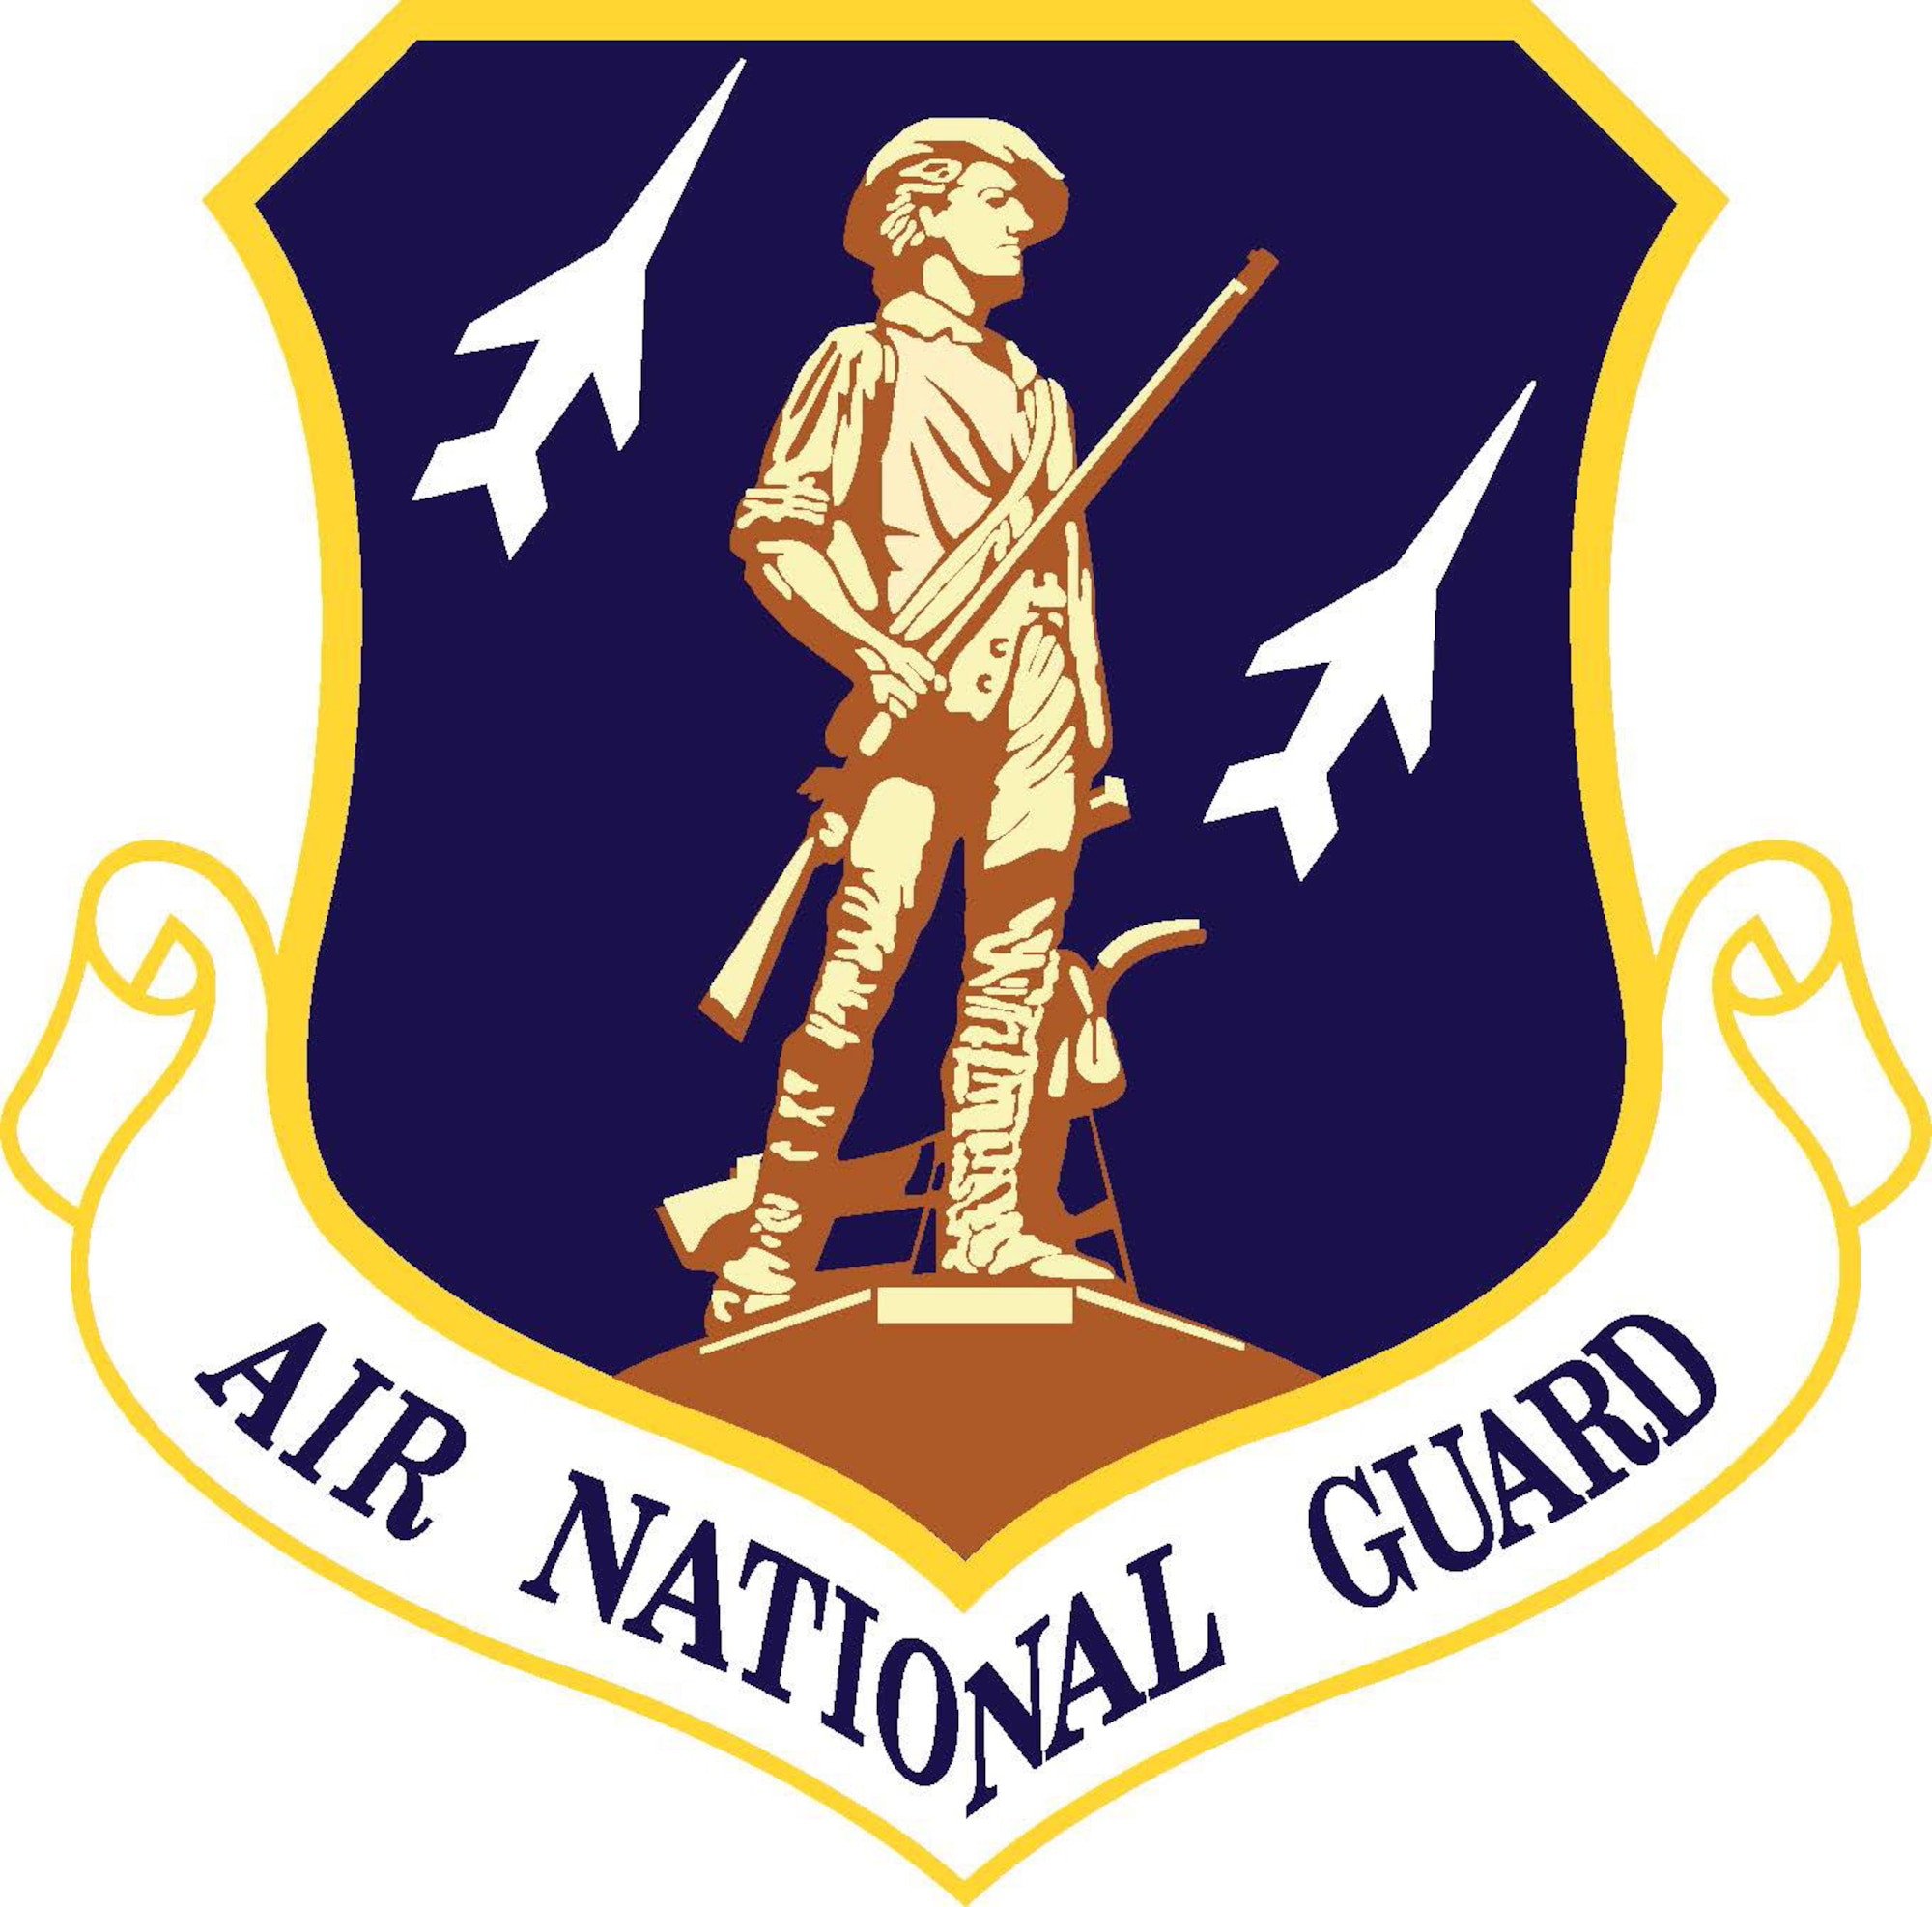 Air National Guard (ANG) shield